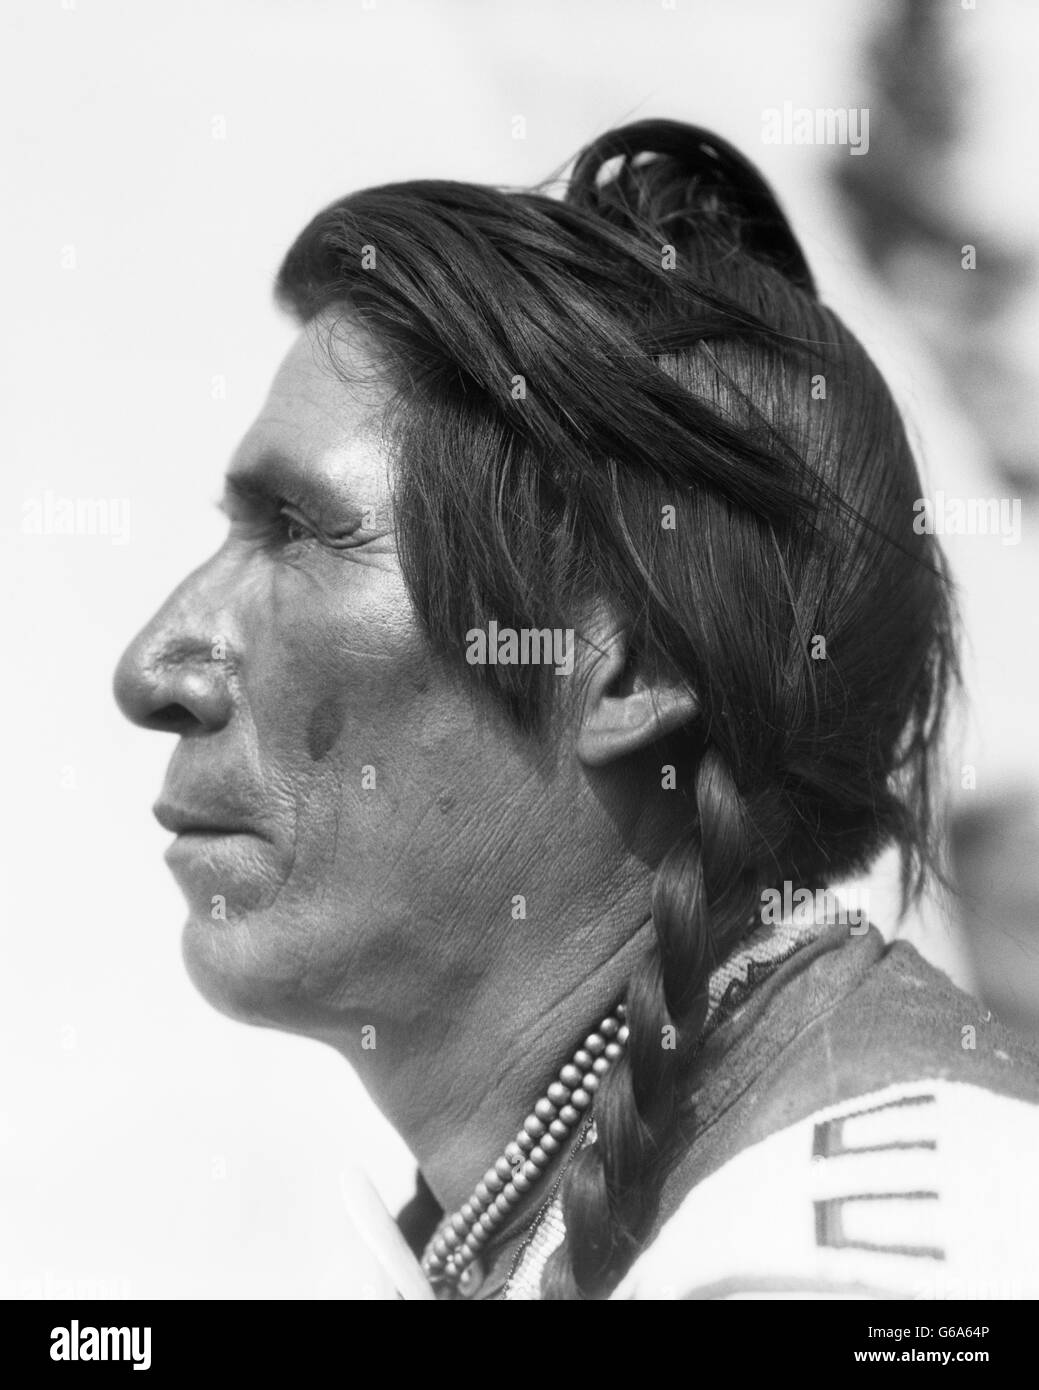 1920 Retrato de perfil de jefe sentado EAGLE Indígena Nativo Americano HOMBRE DE STONEY tribu sioux cerca de Banff, Alberta, Canadá Foto de stock